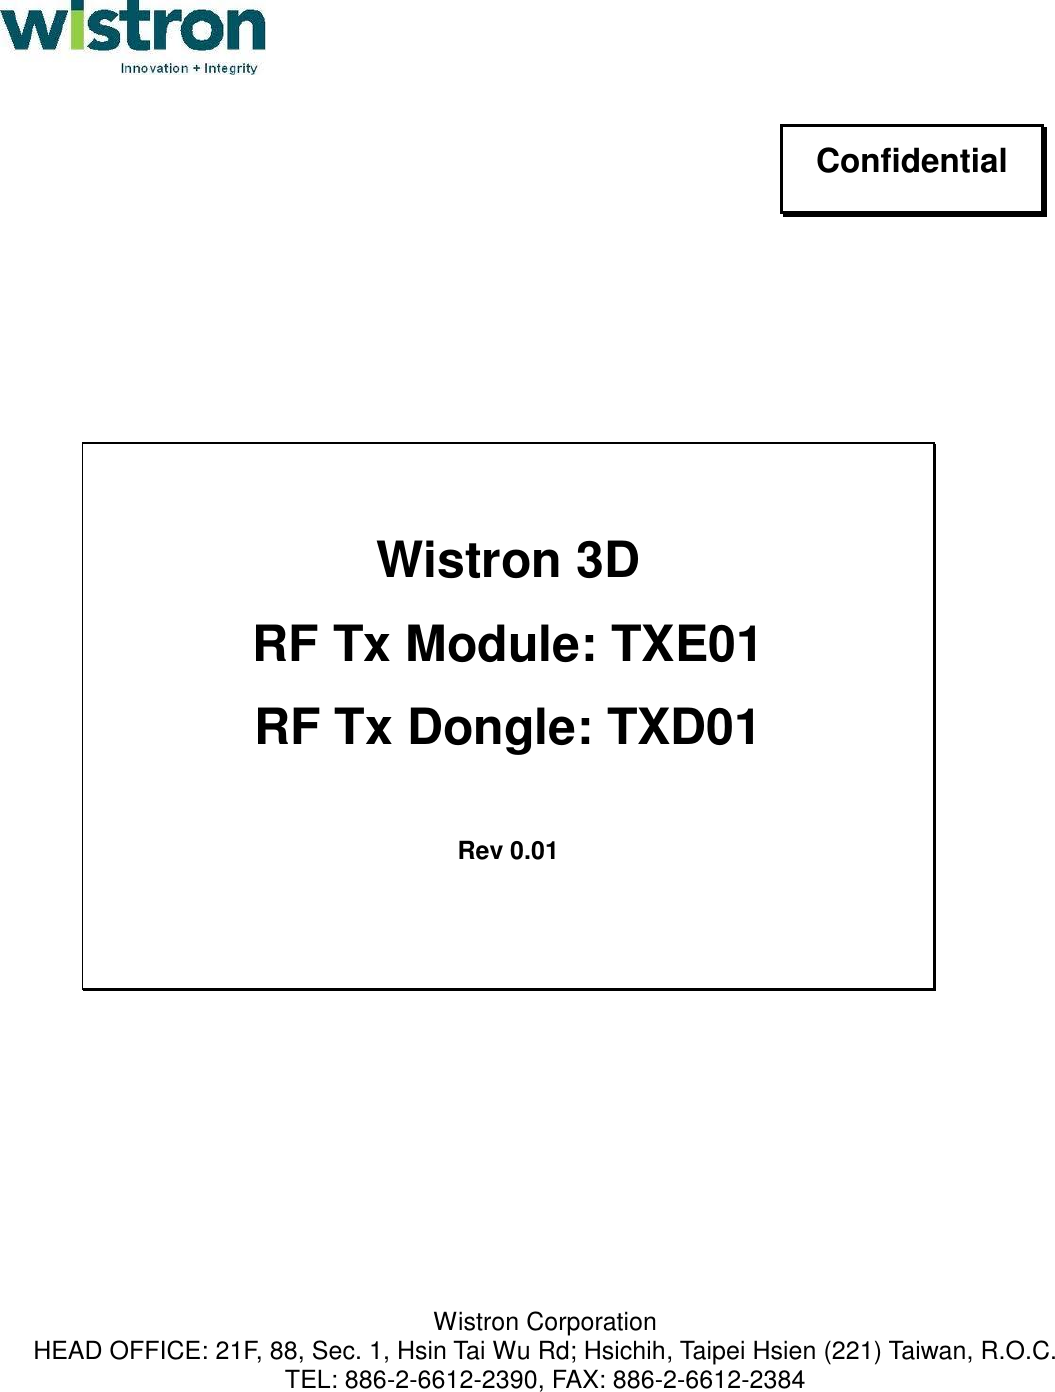                                                                          Wistron Corporation HEAD OFFICE: 21F, 88, Sec. 1, Hsin Tai Wu Rd; Hsichih, Taipei Hsien (221) Taiwan, R.O.C. TEL: 886-2-6612-2390, FAX: 886-2-6612-2384 Confidential  Wistron 3D  RF Tx Module: TXE01 RF Tx Dongle: TXD01  Rev 0.01 